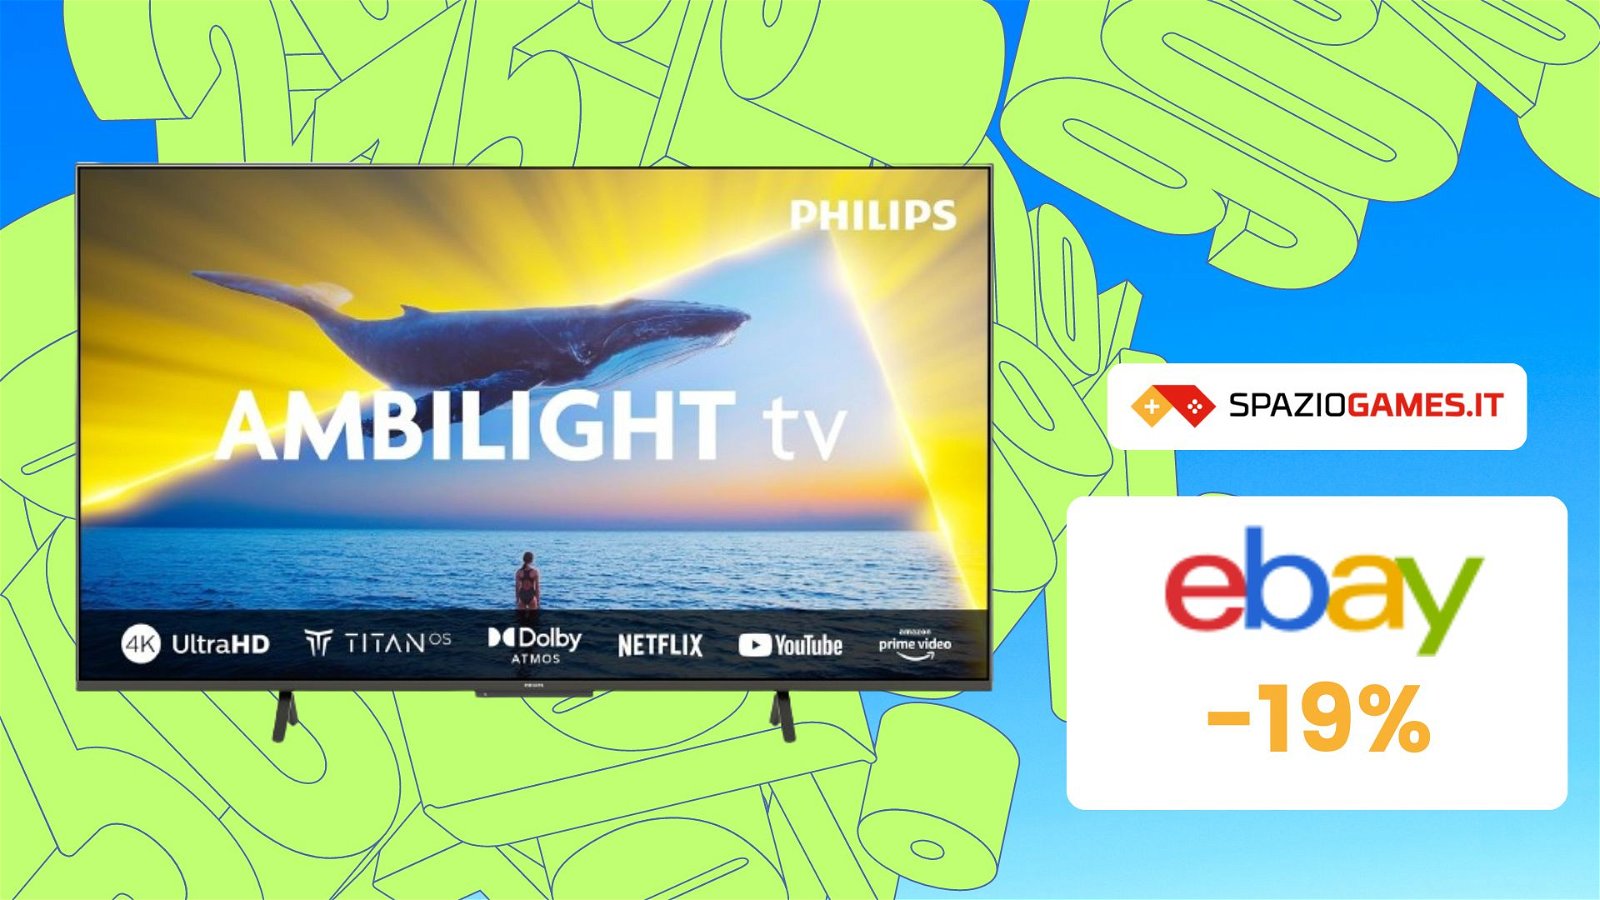 Smart TV Philips Ambilight 55" 4K al PREZZO PIU' BASSO di sempre! -19%